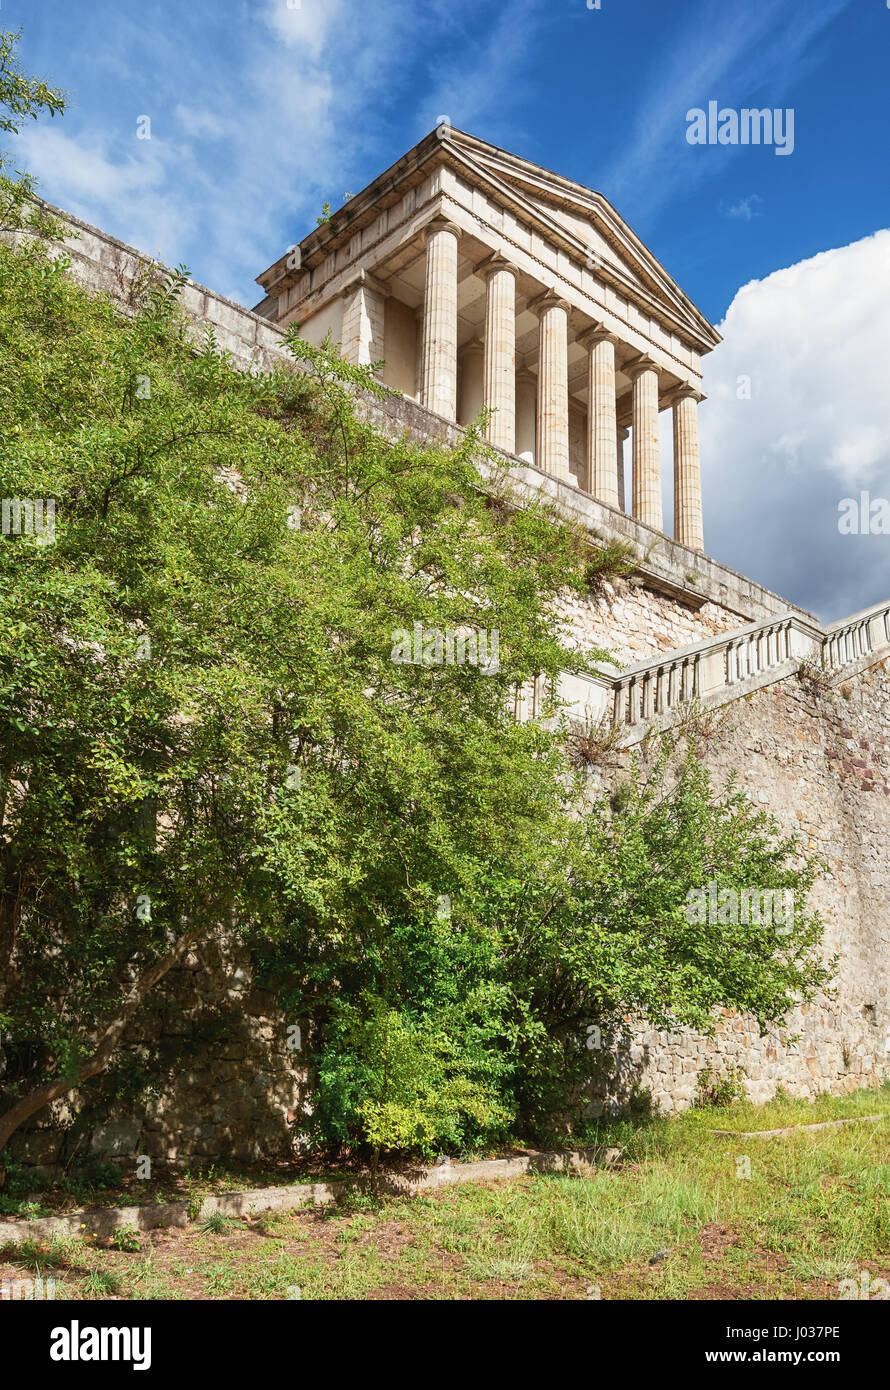 Das neoklassizistische Gerichtsgebäude in Largentiere in der Ardeche-Region von Frankreich sieht aus wie ein Griechenland-Tempel Stockfoto